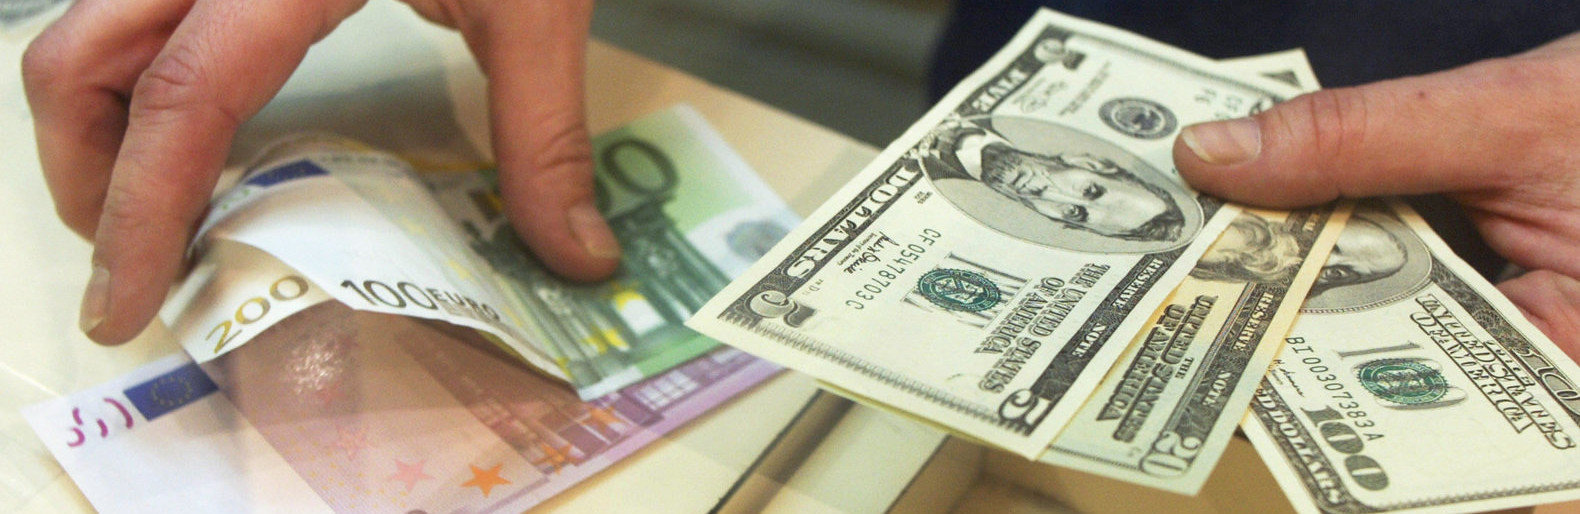 Валют обмен в рубль отзывы advspay